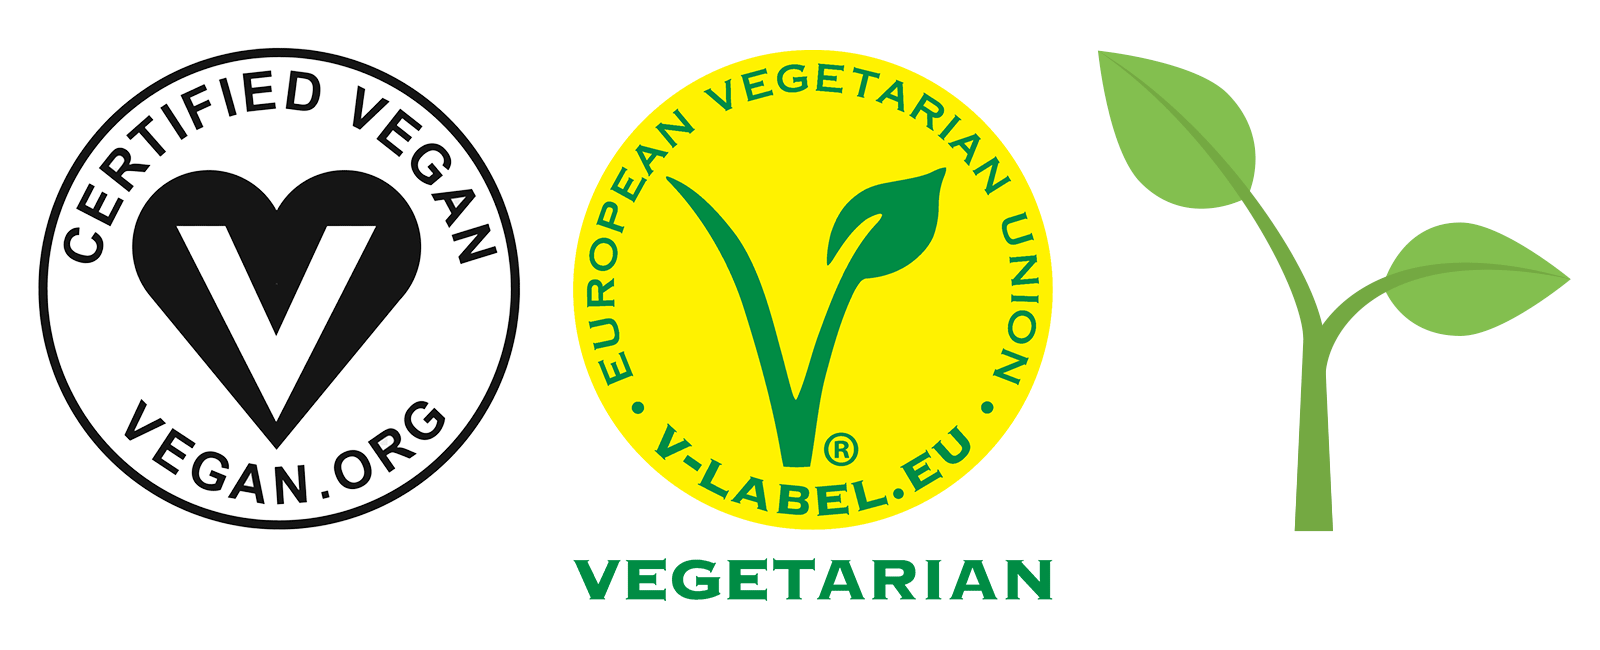 vegetarian and vegan logo representations